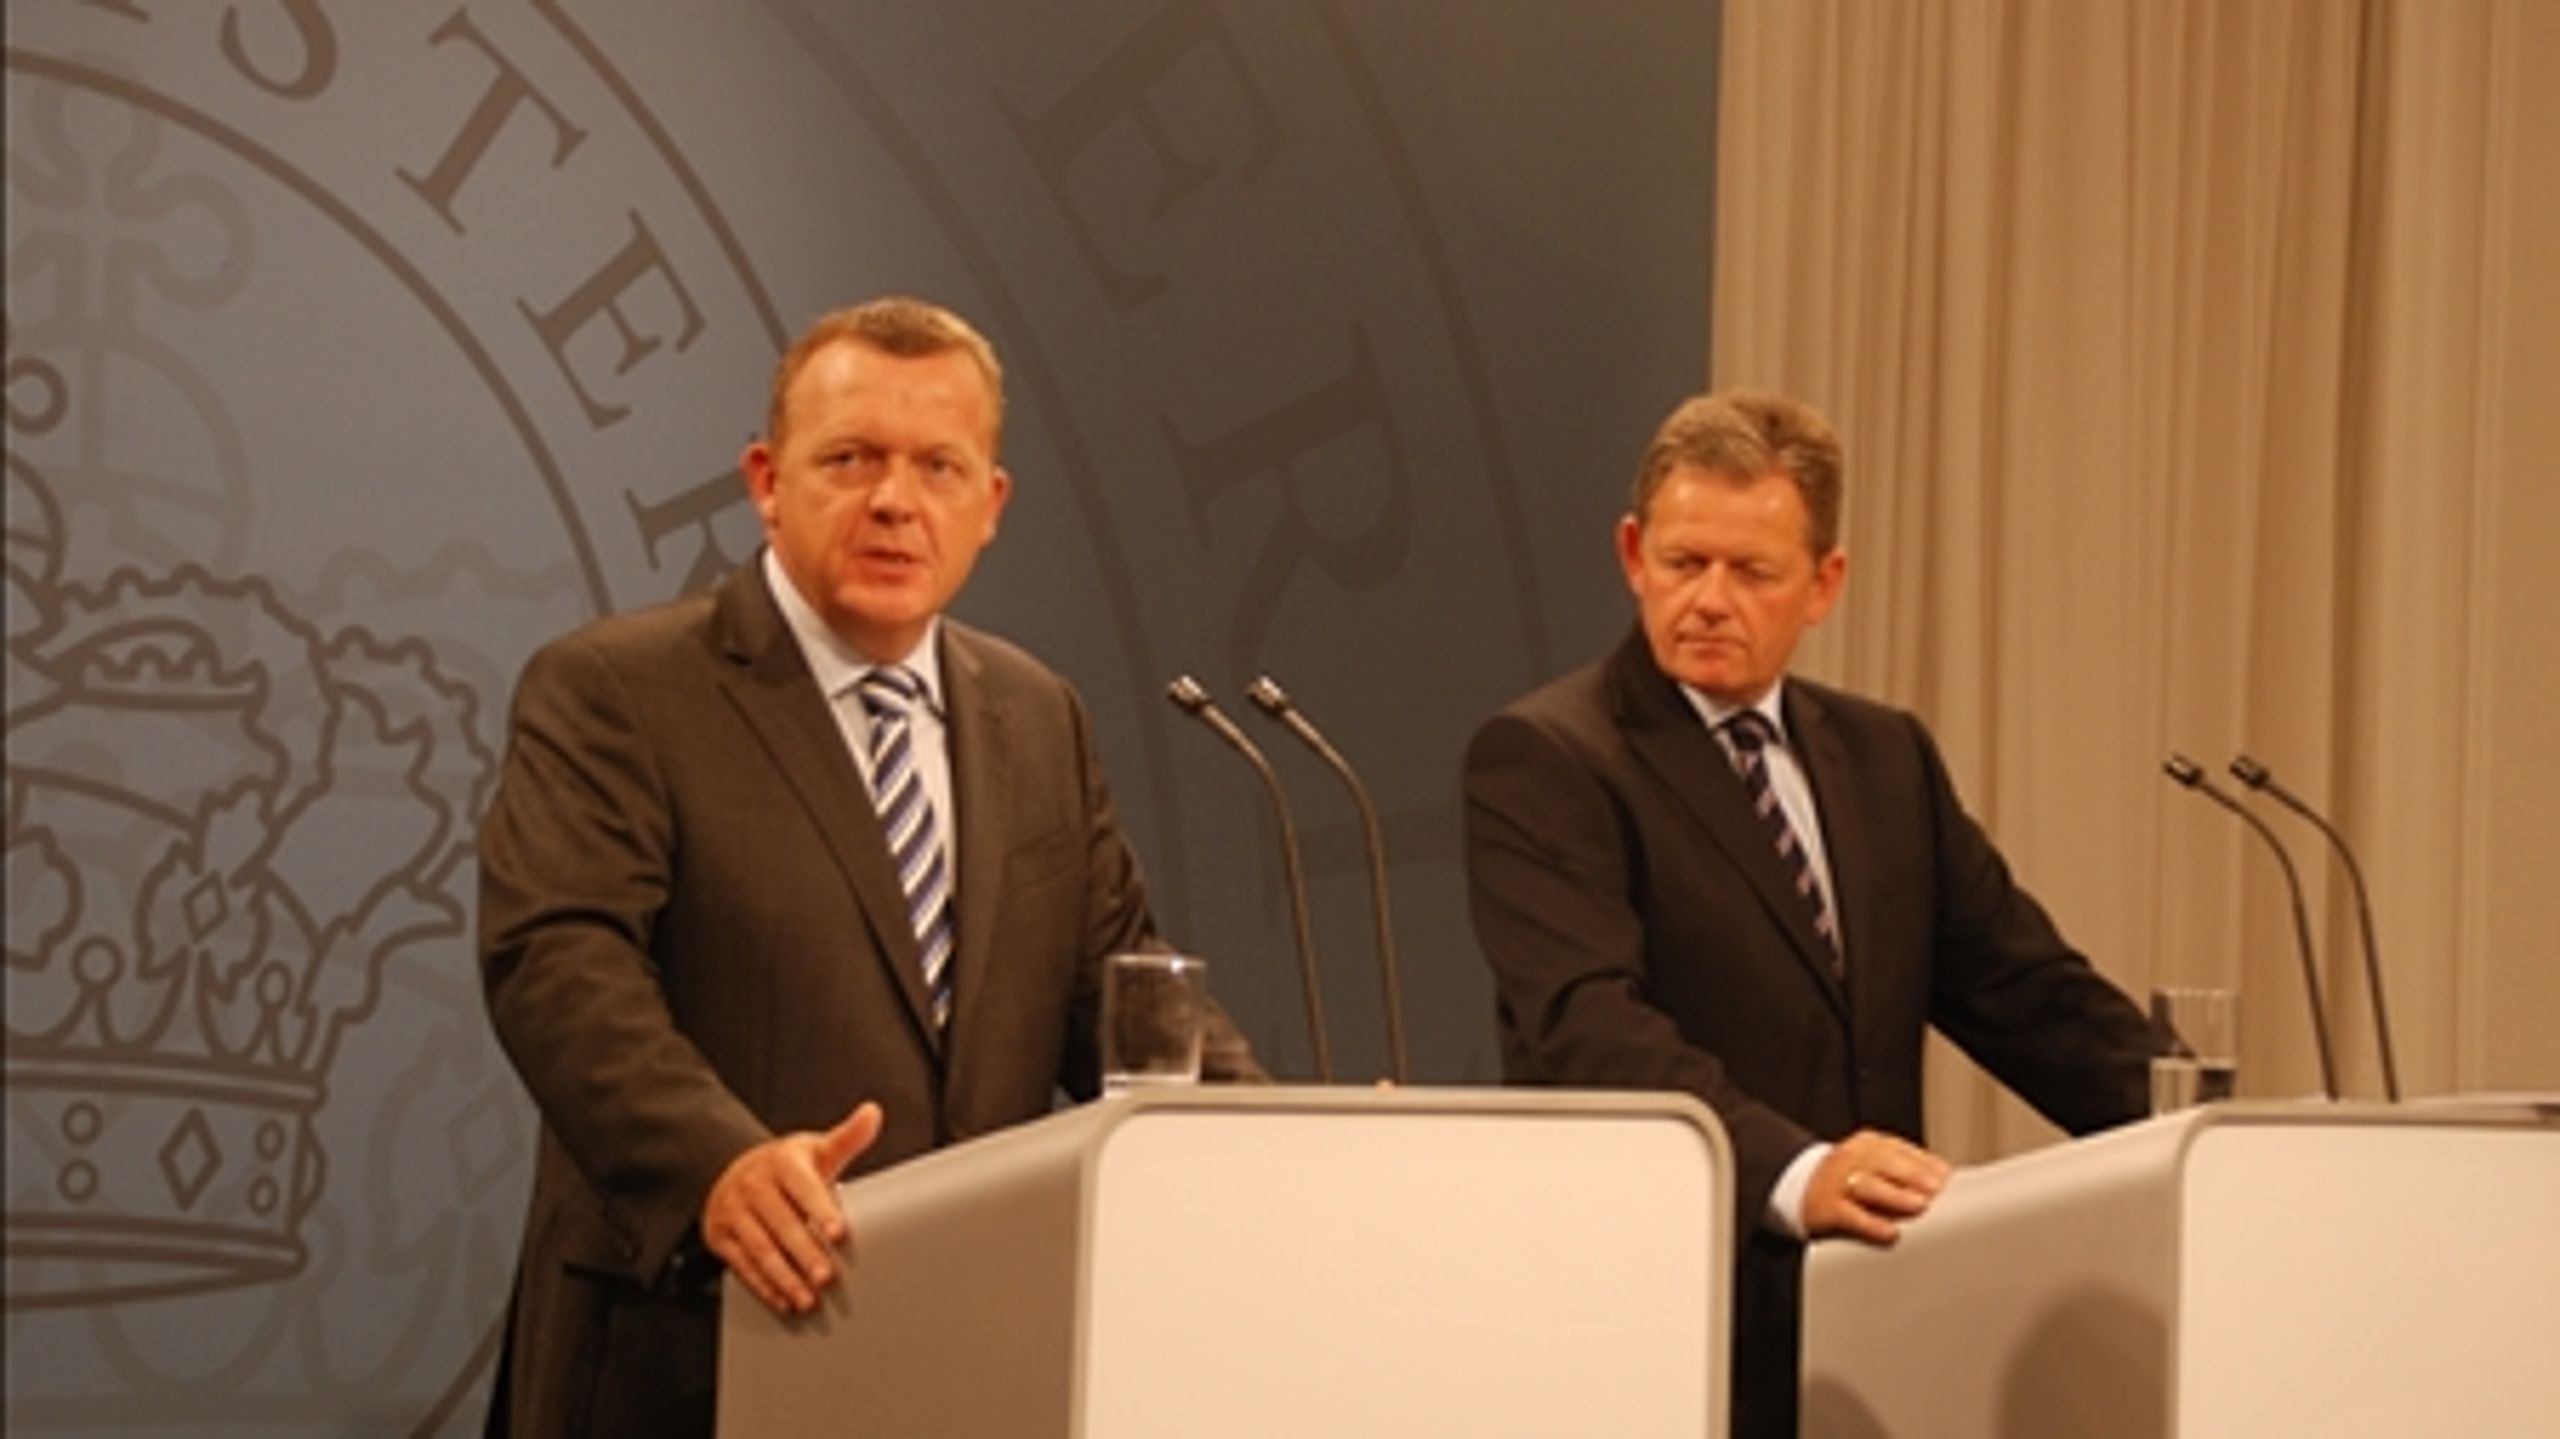 Flere praktikpladser er en del af den vækstplan, som statsminister Lars Løkke Rasmussen (V) og justitsminister Lars Barfoed (K) har fremlagt.  